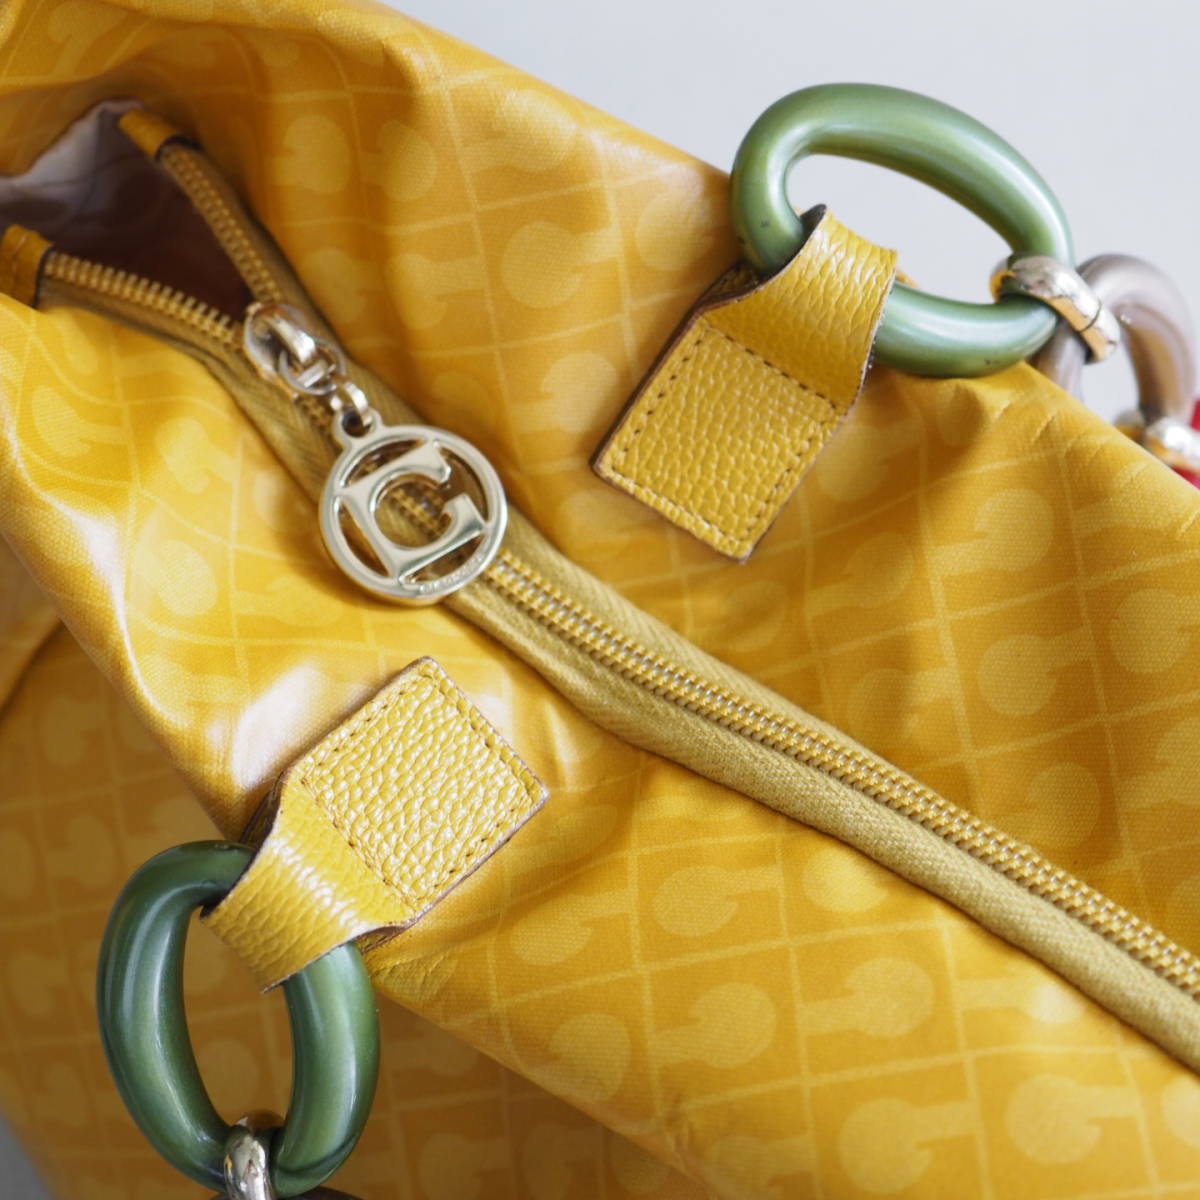  Gherardini GHERARDINI G любитель цепь большая сумка one сумка на плечо желтый общий рисунок Logo / бренд женский 